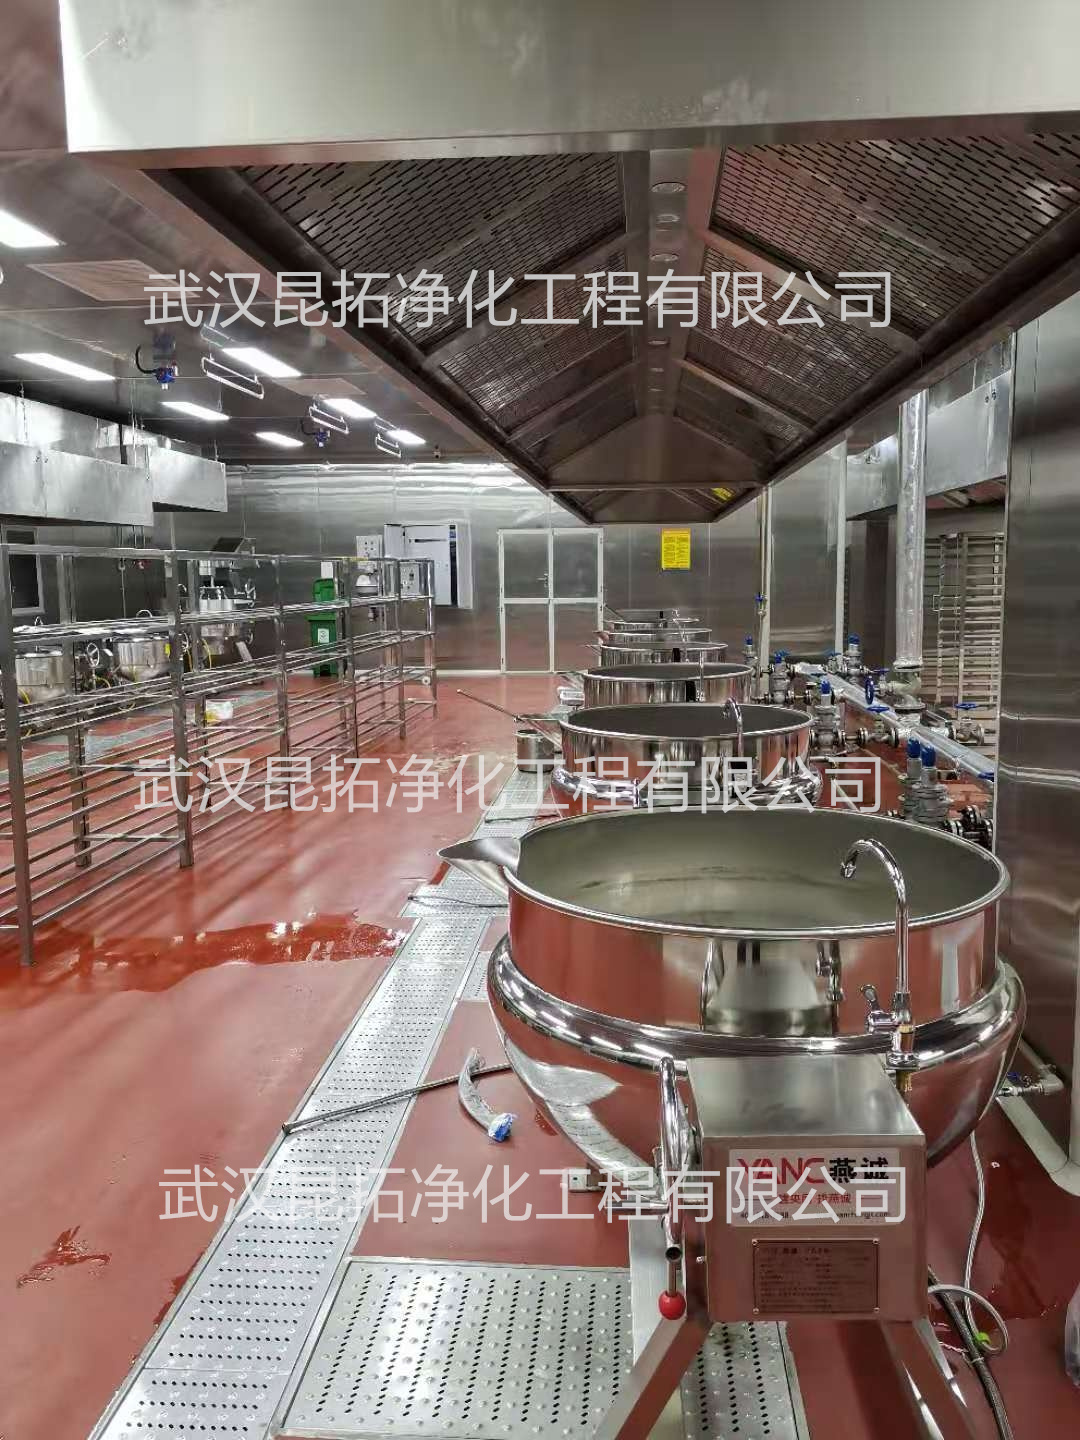 武汉中慧心良源食品有限公司新建中央厨房3.jpg